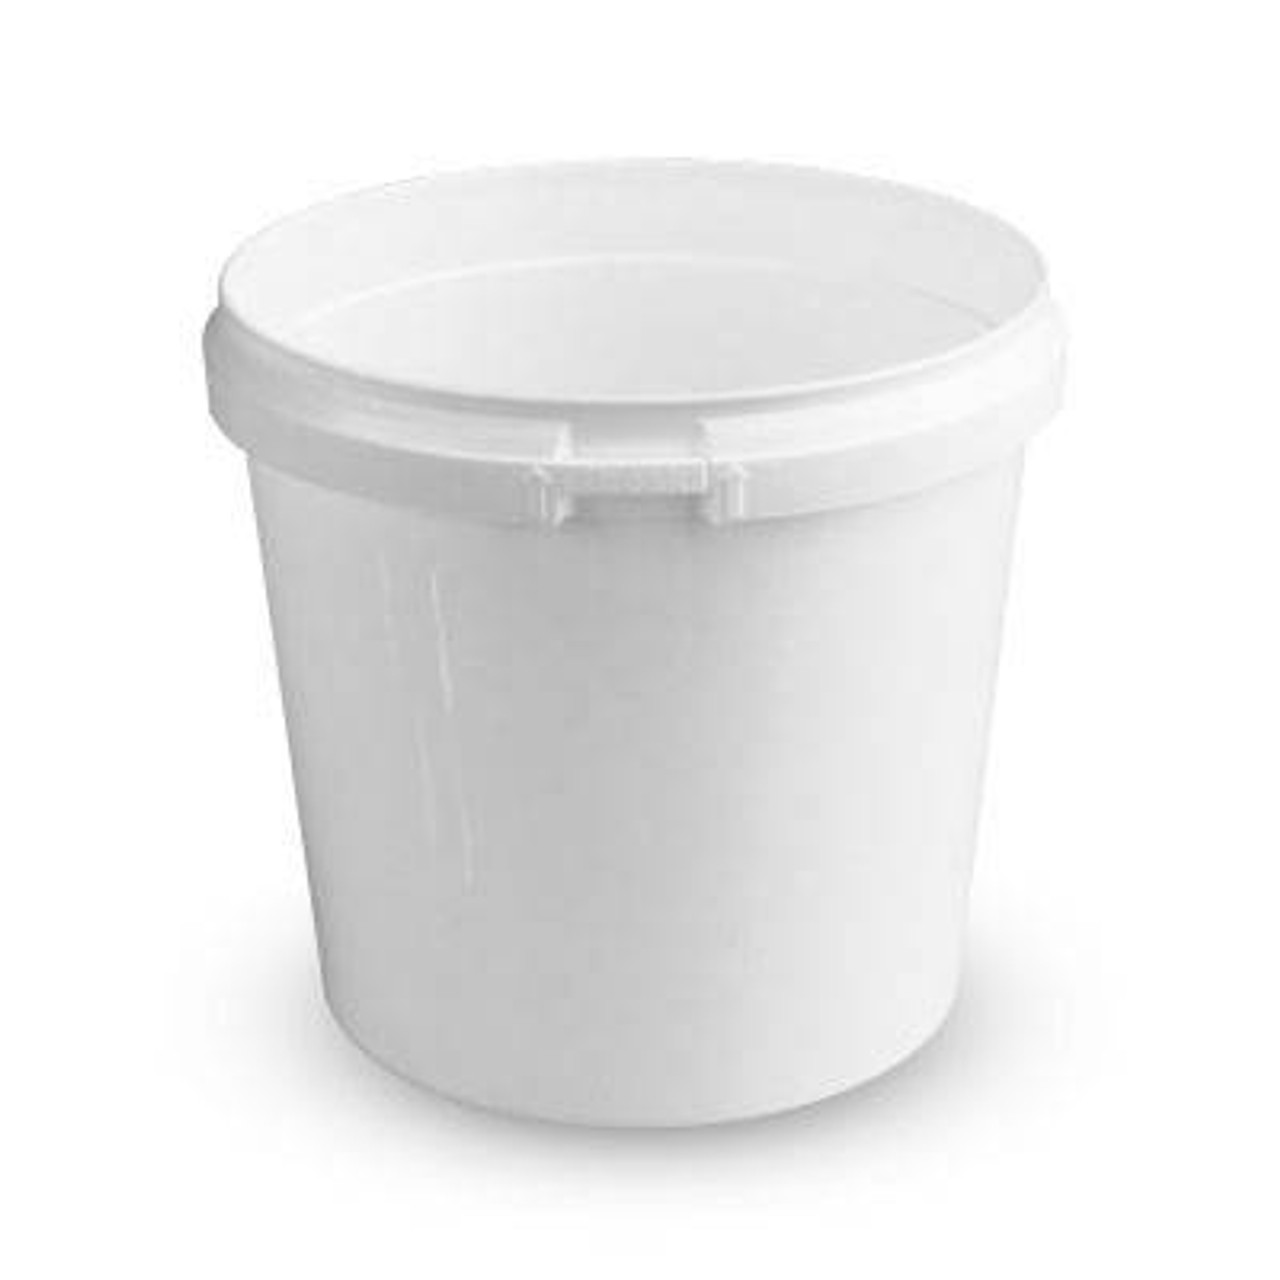 8 oz. PP Plastic Round Tamper Evident Container, 110mm